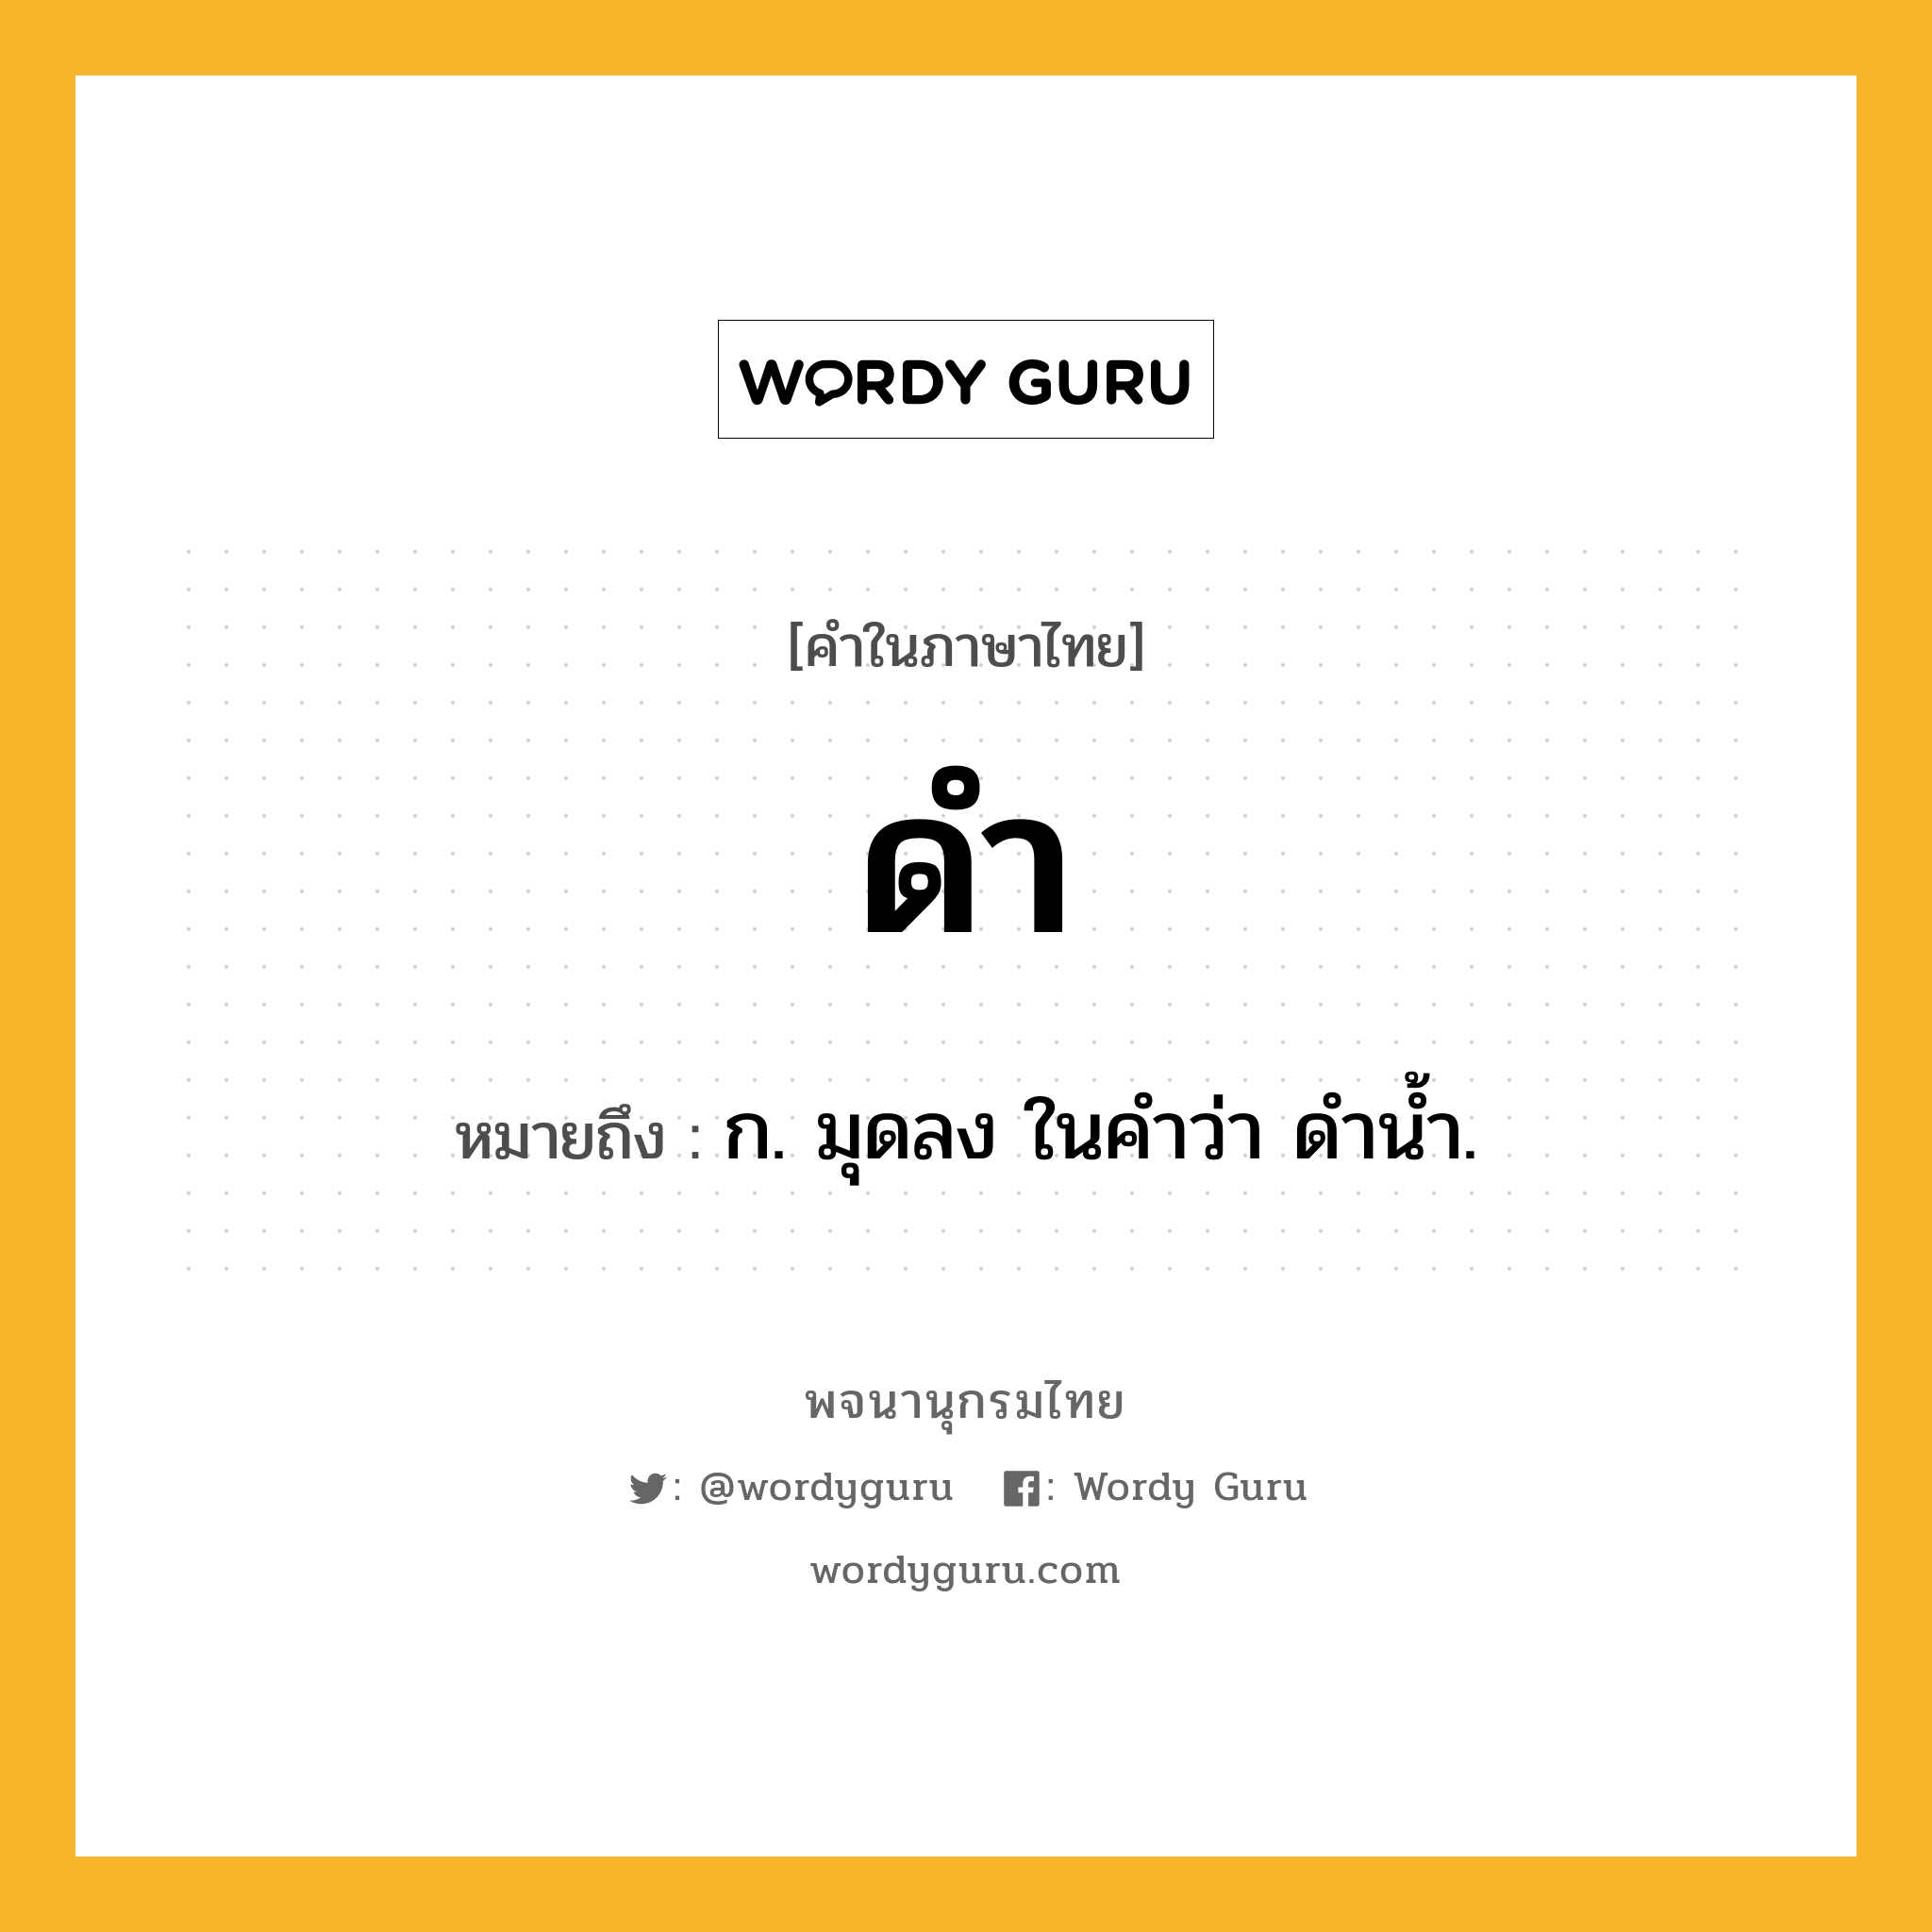 ดำ ความหมาย หมายถึงอะไร?, คำในภาษาไทย ดำ หมายถึง ก. มุดลง ในคําว่า ดํานํ้า.